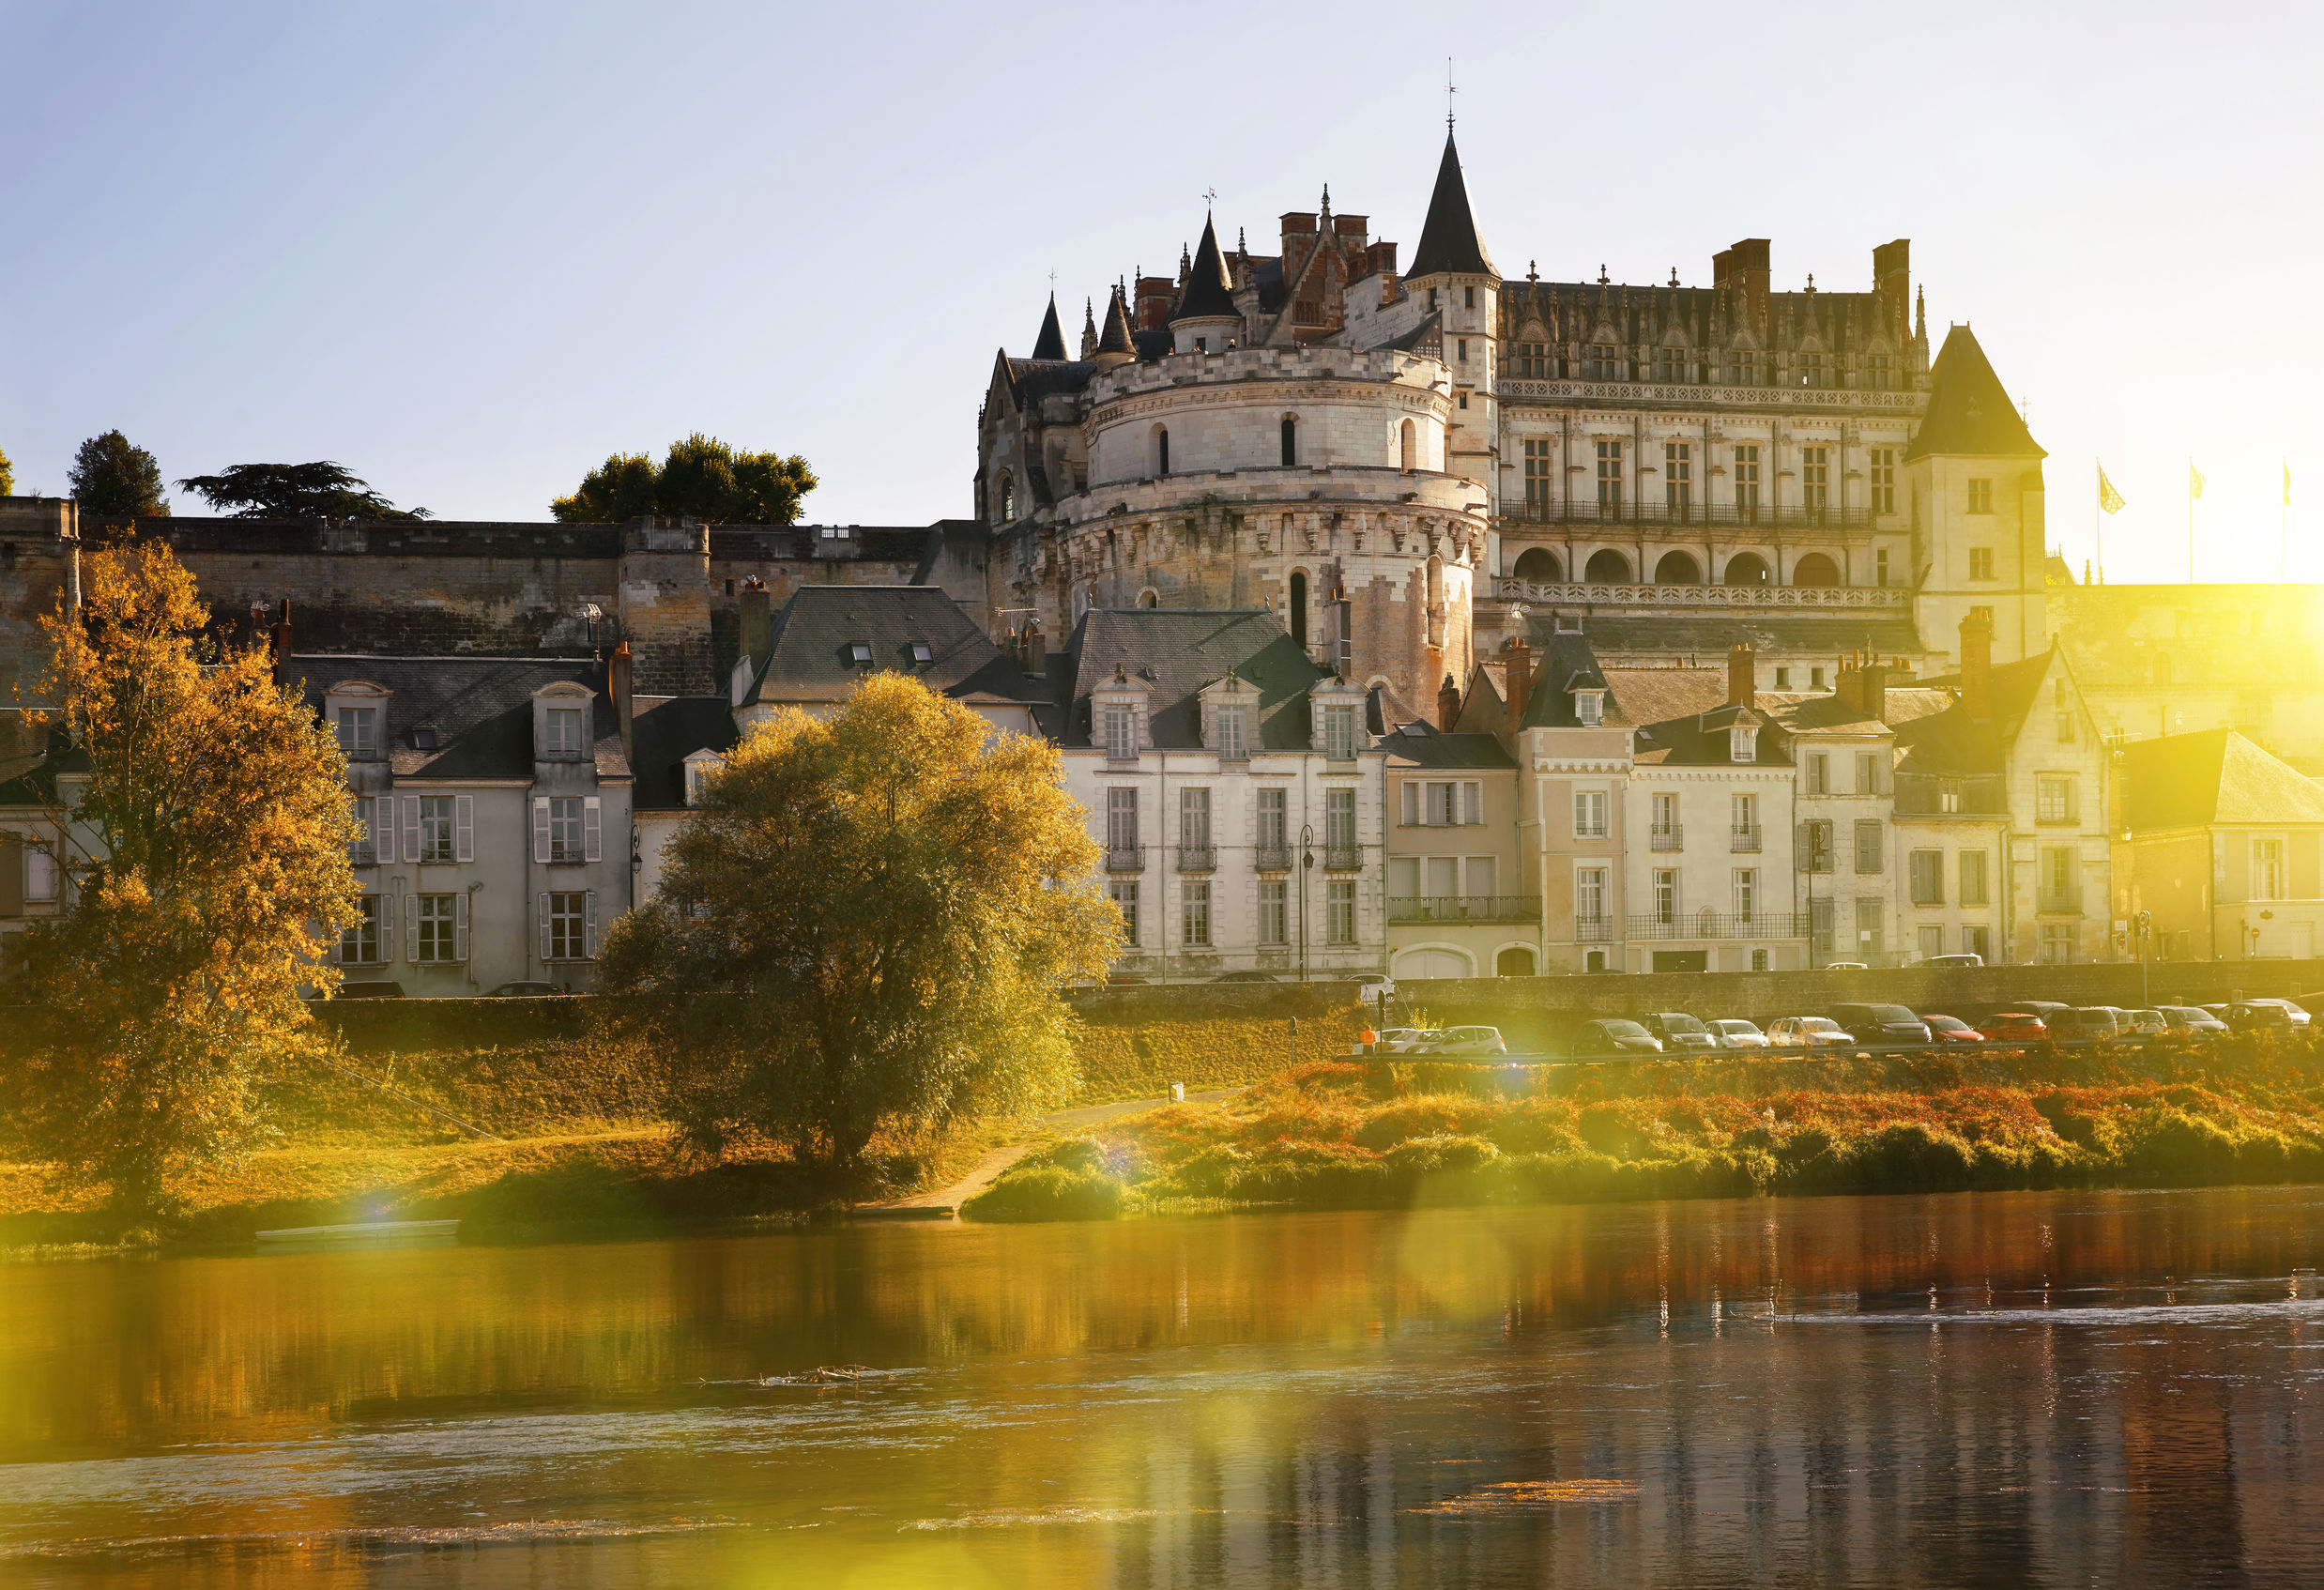 View of Royal castle Chateau de Amboise on river Loire, France